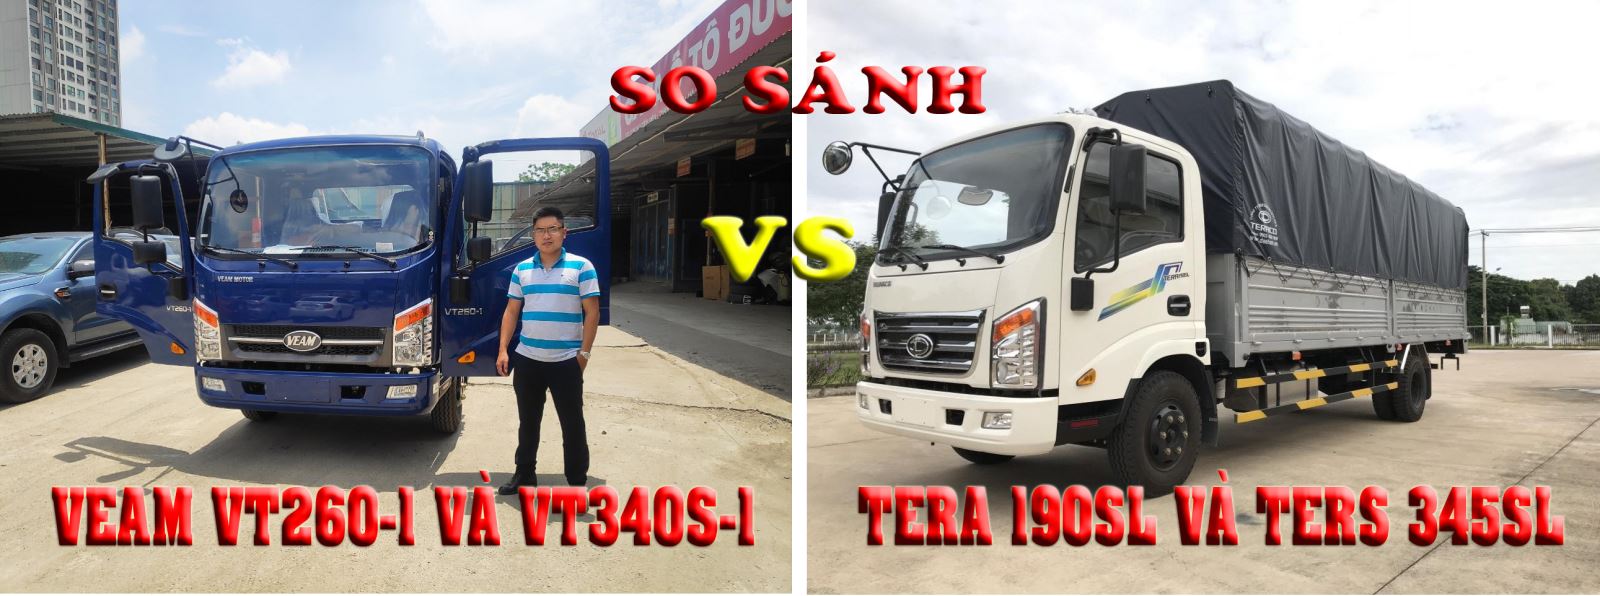 So sánh xe tải Veam VT340s-1 và xe tải Tera 345sl